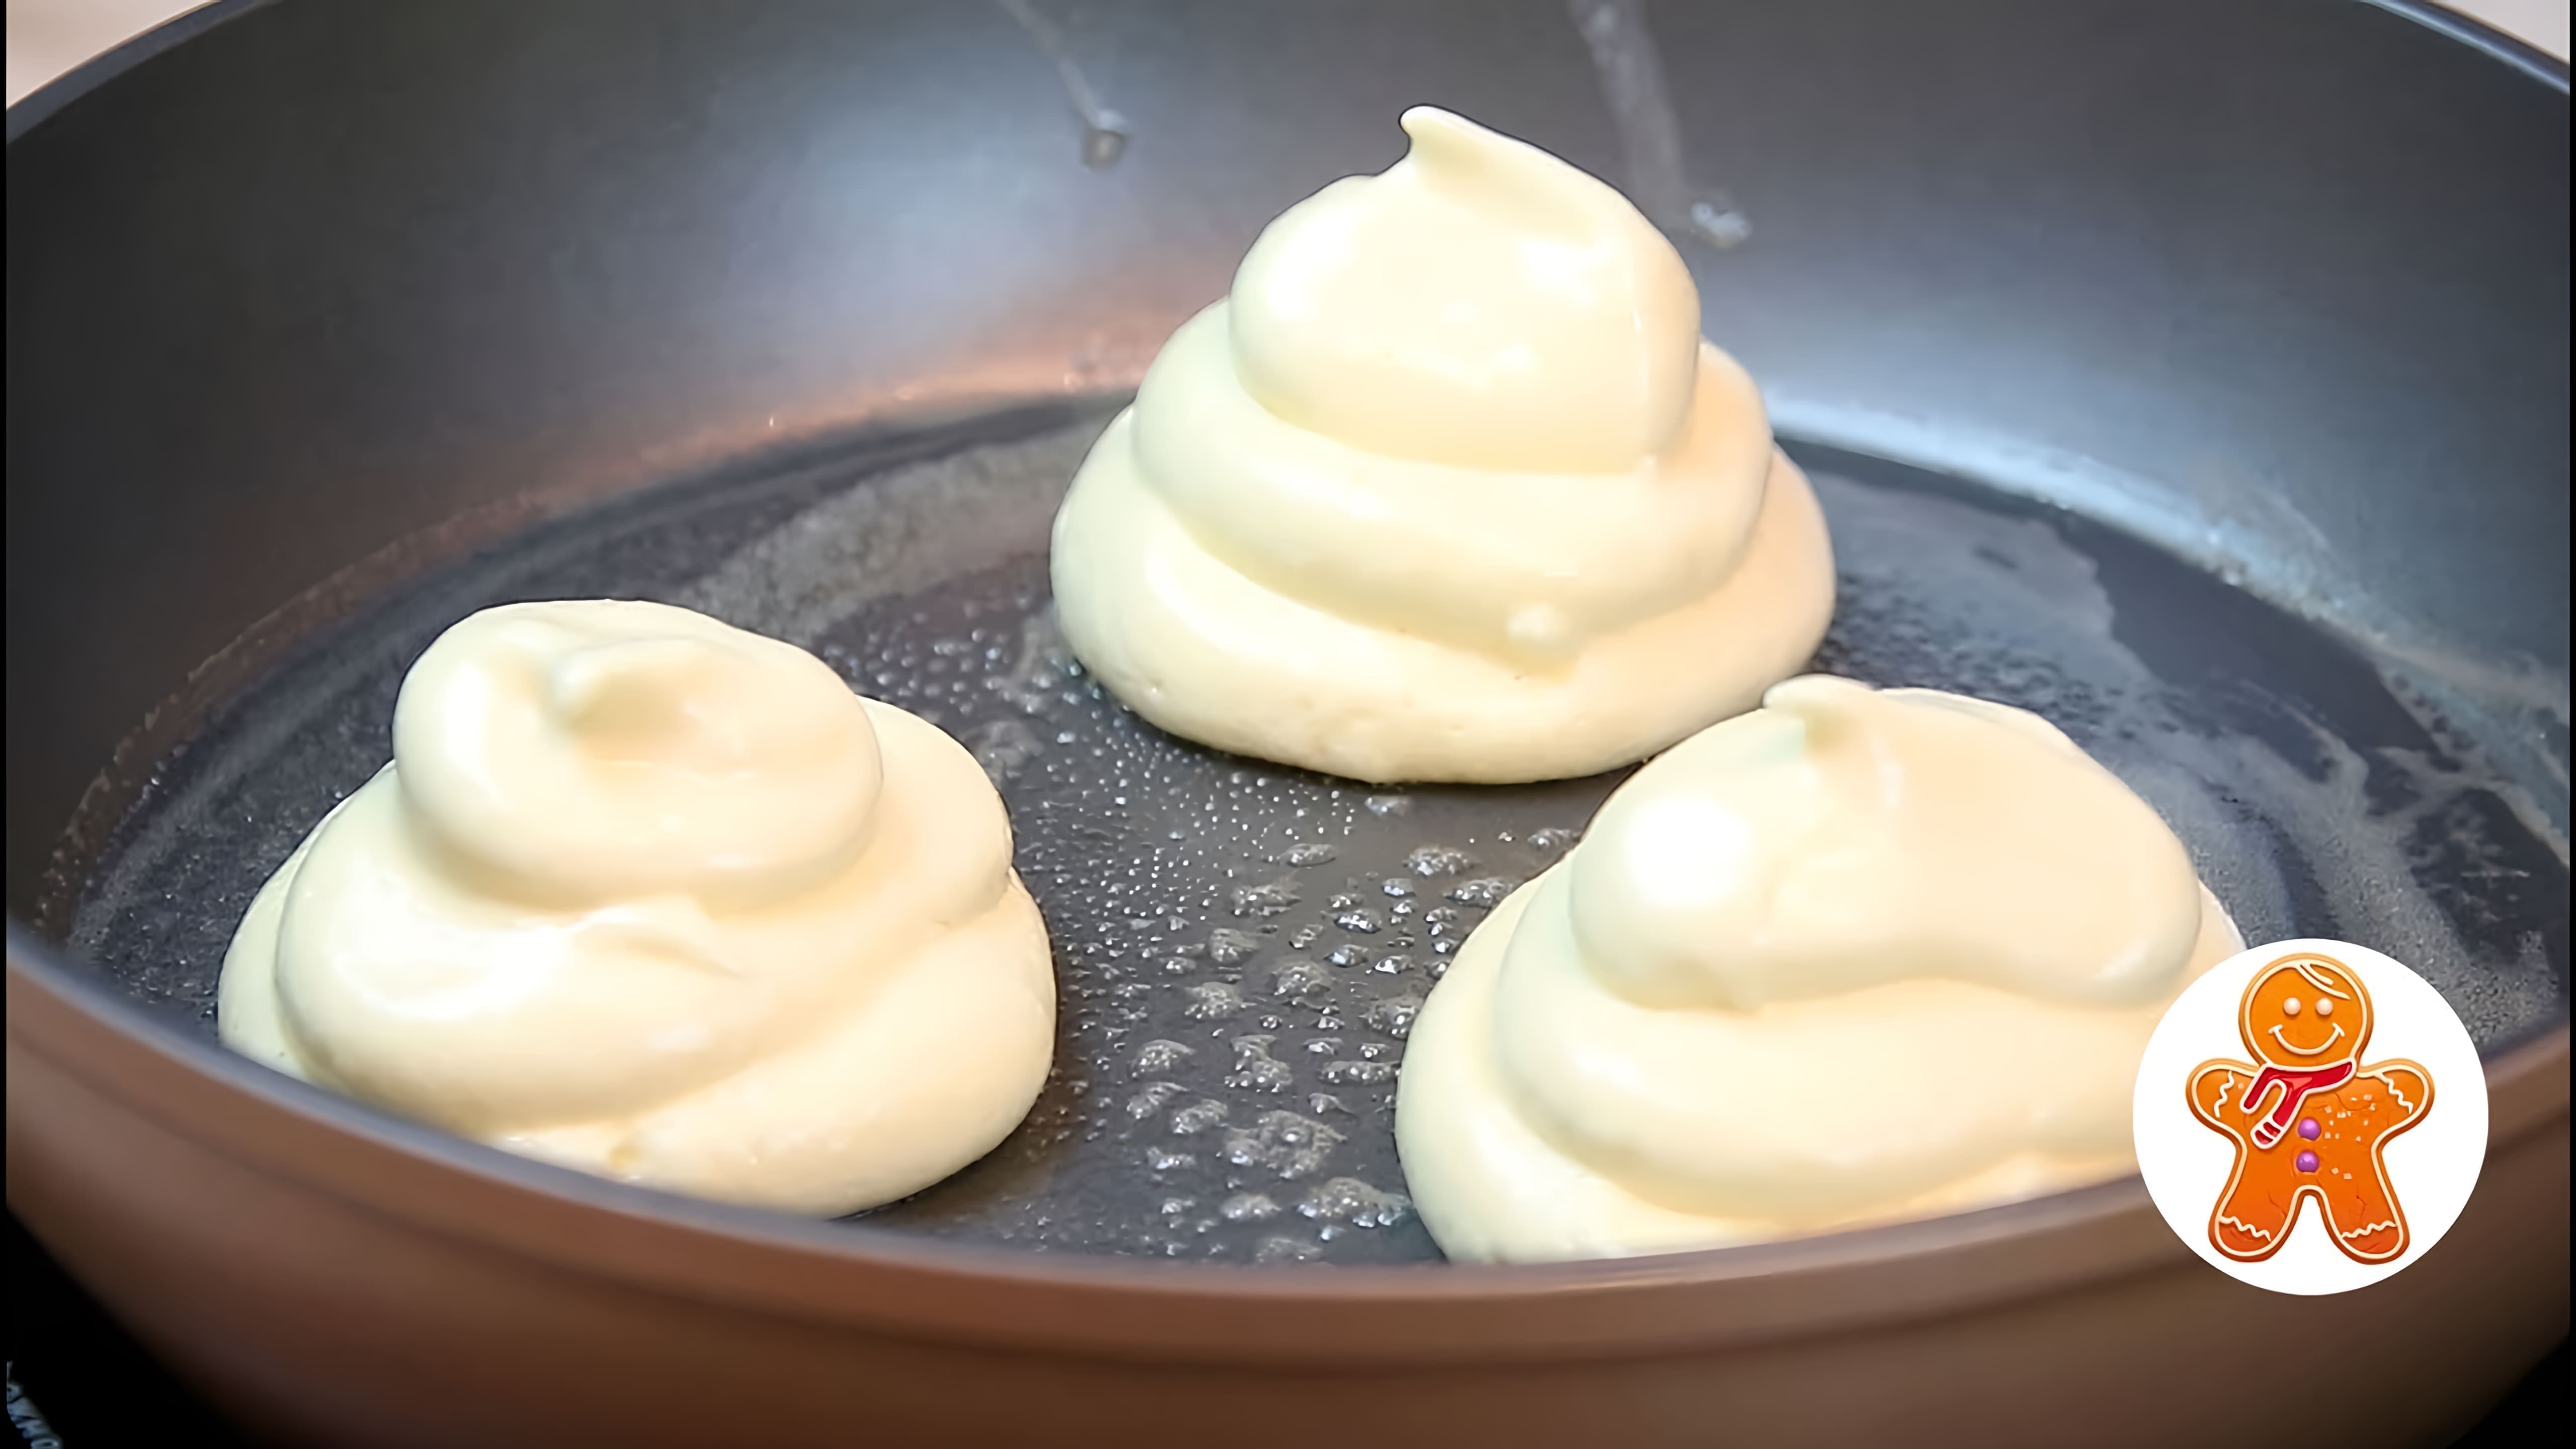 В этом видео демонстрируется процесс приготовления японских панкейков, которые также известны как пышные оладьи или суфле панкейки